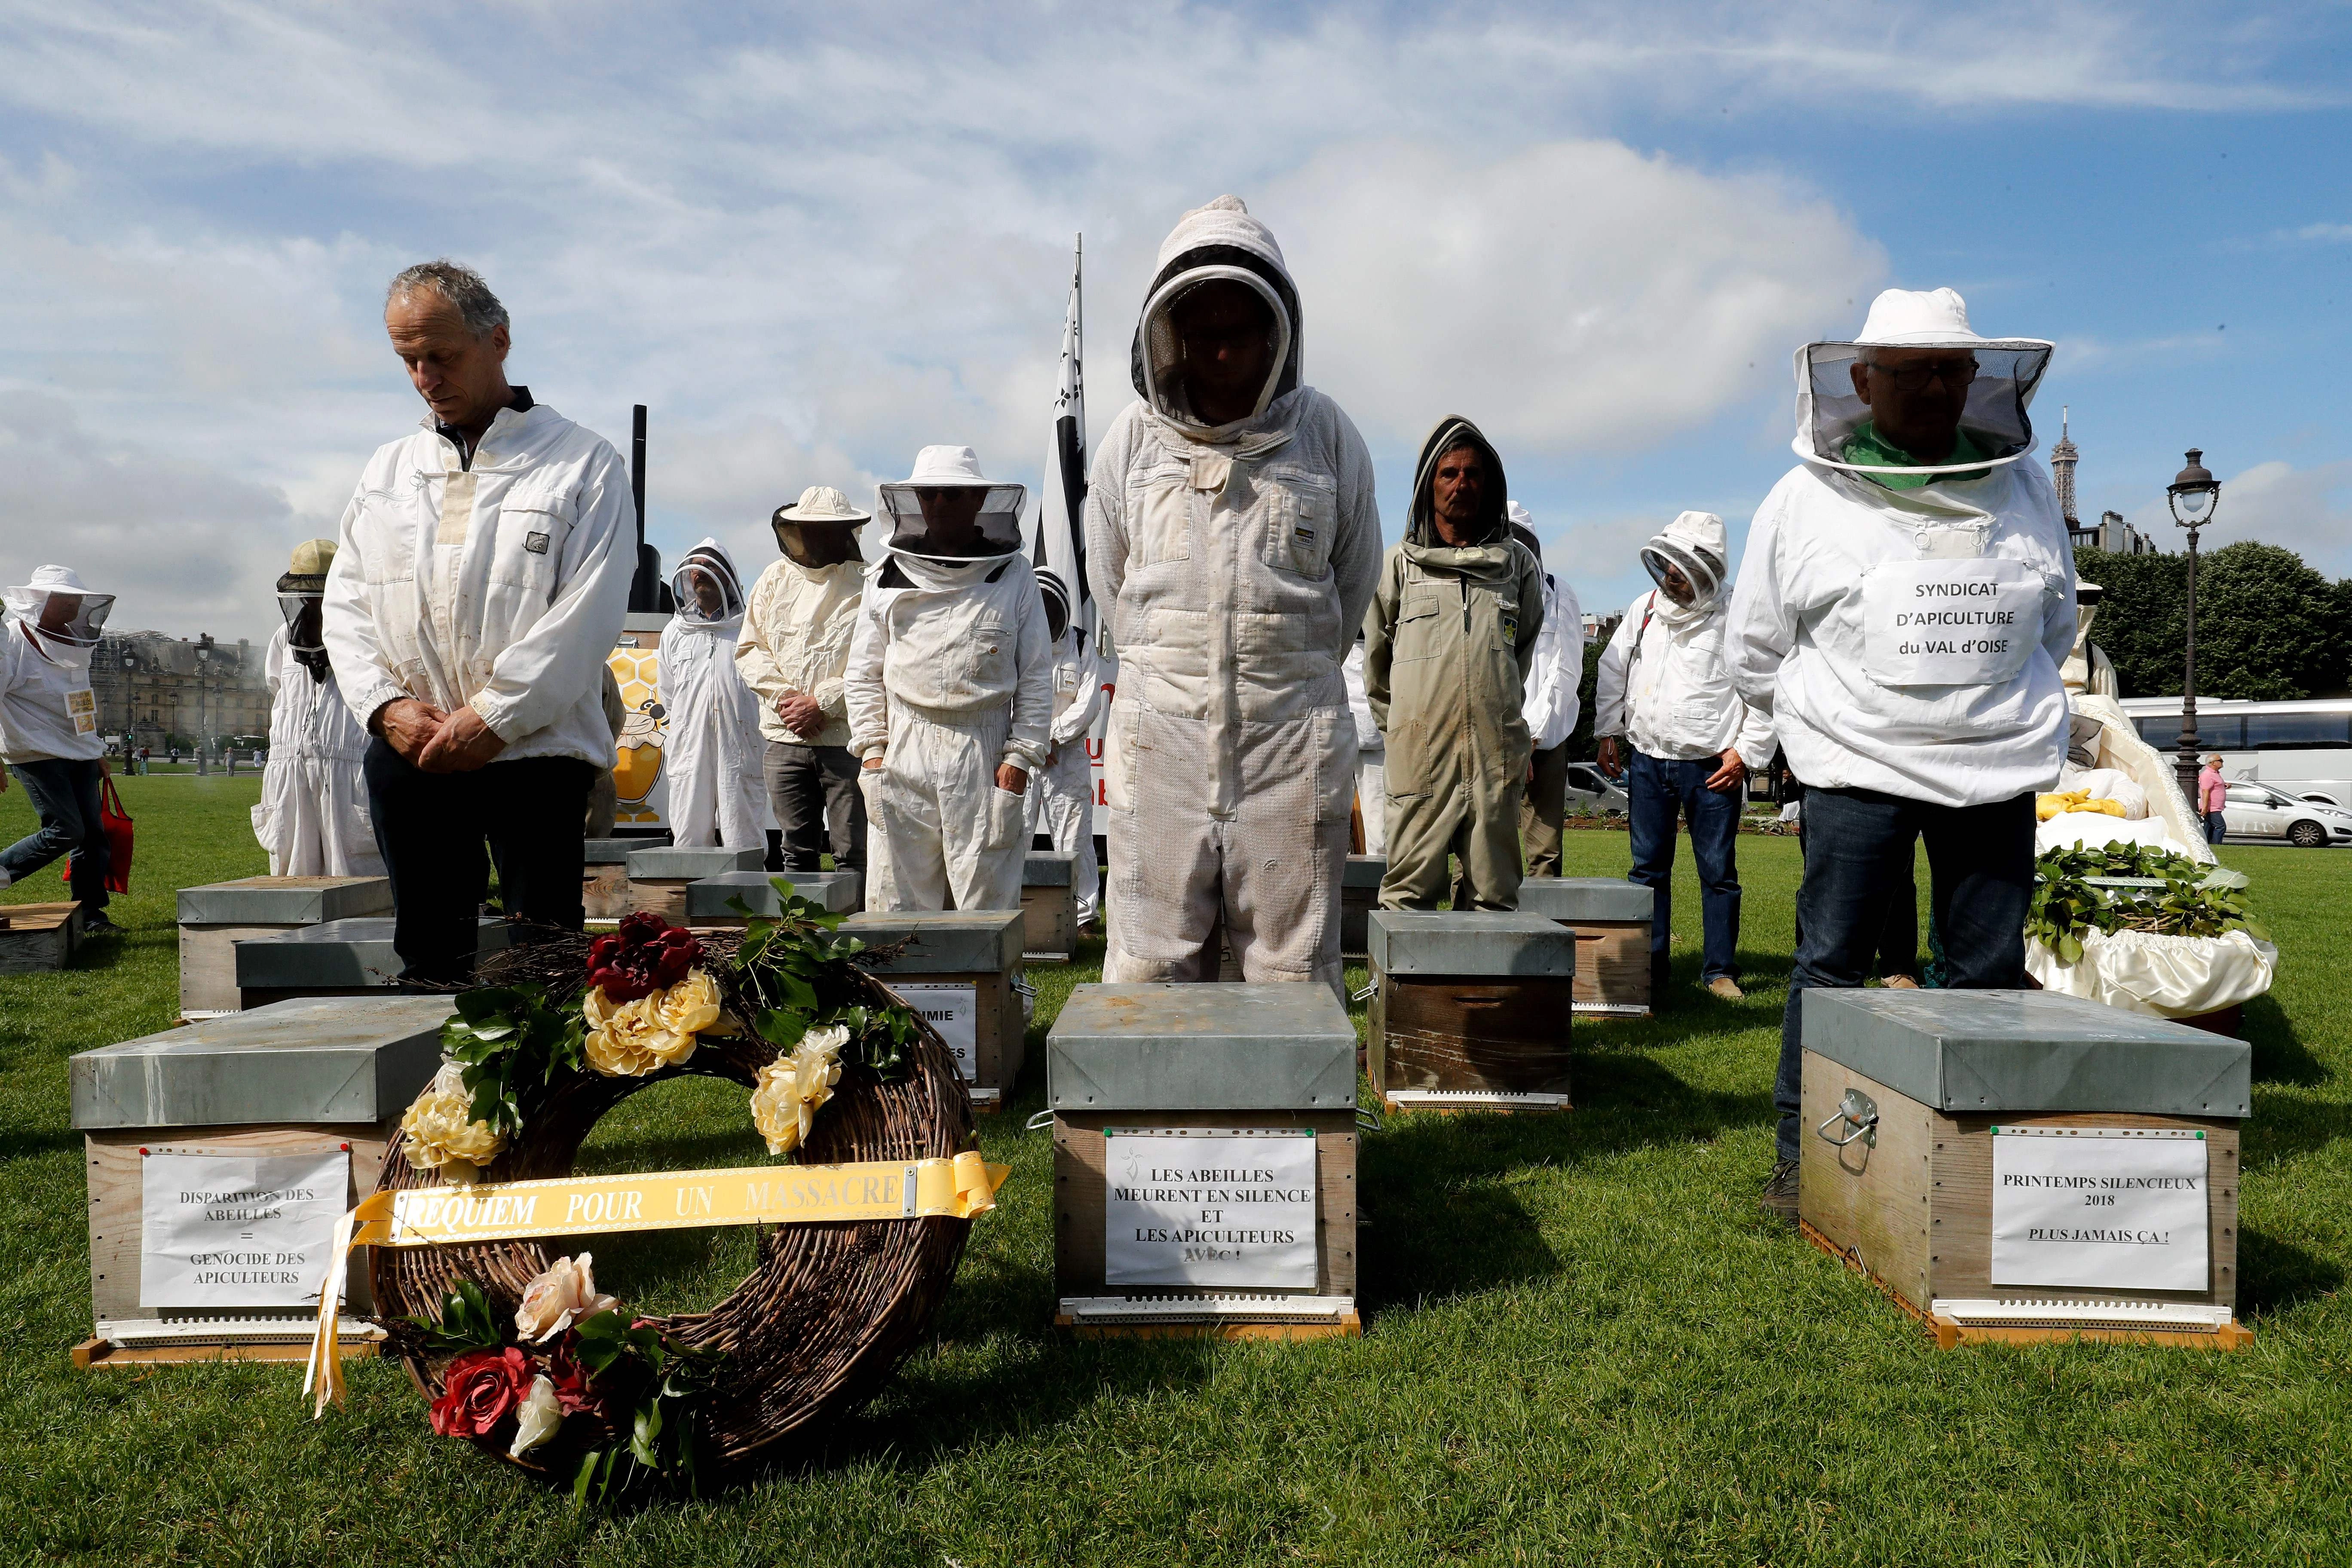 Apicultores participam de uma manifestação na Esplanade des Invalides, em Paris, em 7 de junho de 2018, durante um dia nacional de ação dos apicultores franceses.